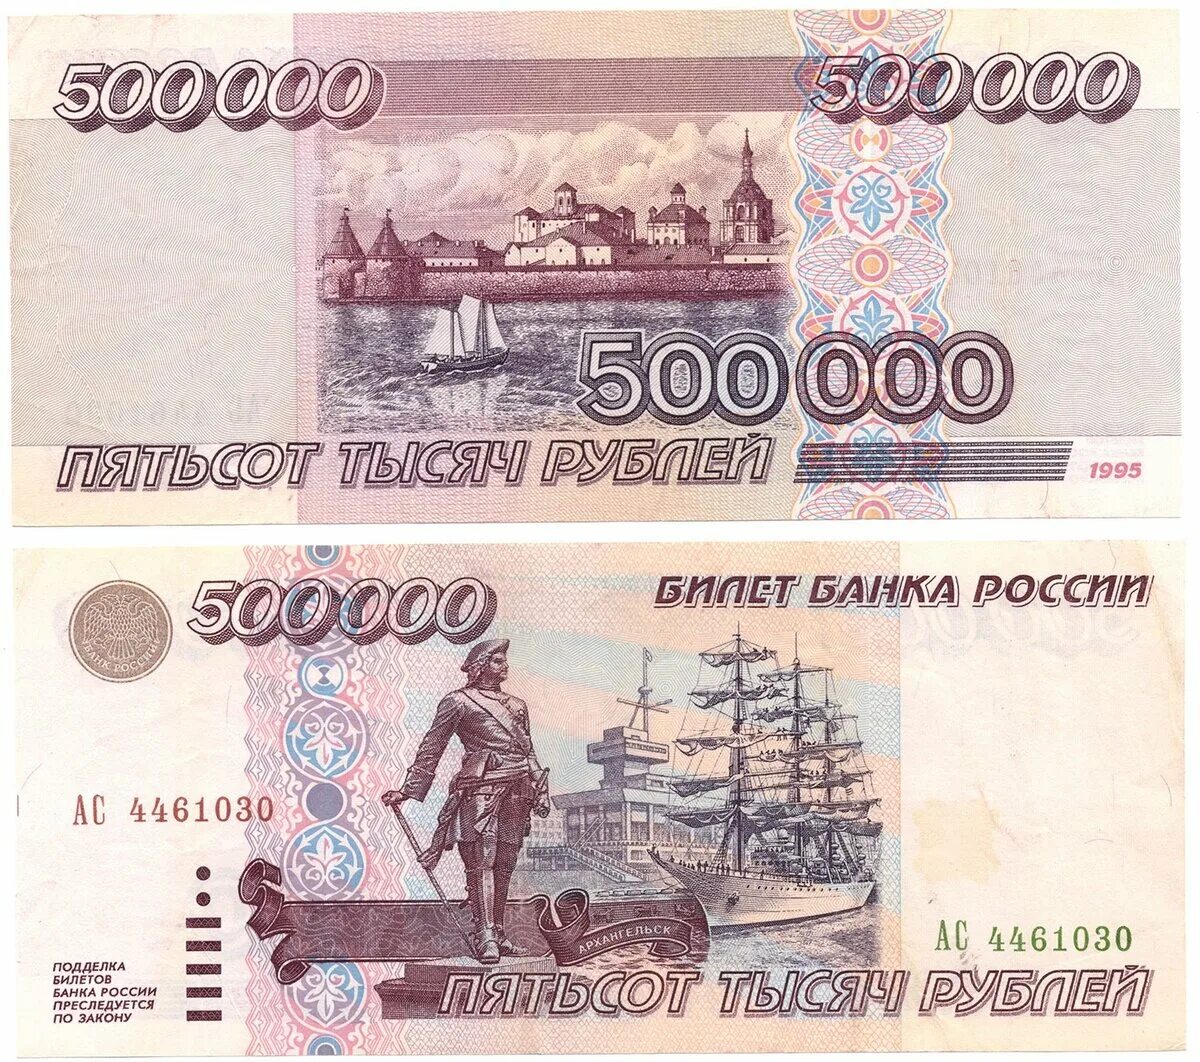 500 рублей россии. 500 000 Рублей 1995. Купюра 500 000 рублей 1995 года. 500 000 Рублей 1995 года. 500 000 Рублей купюра.